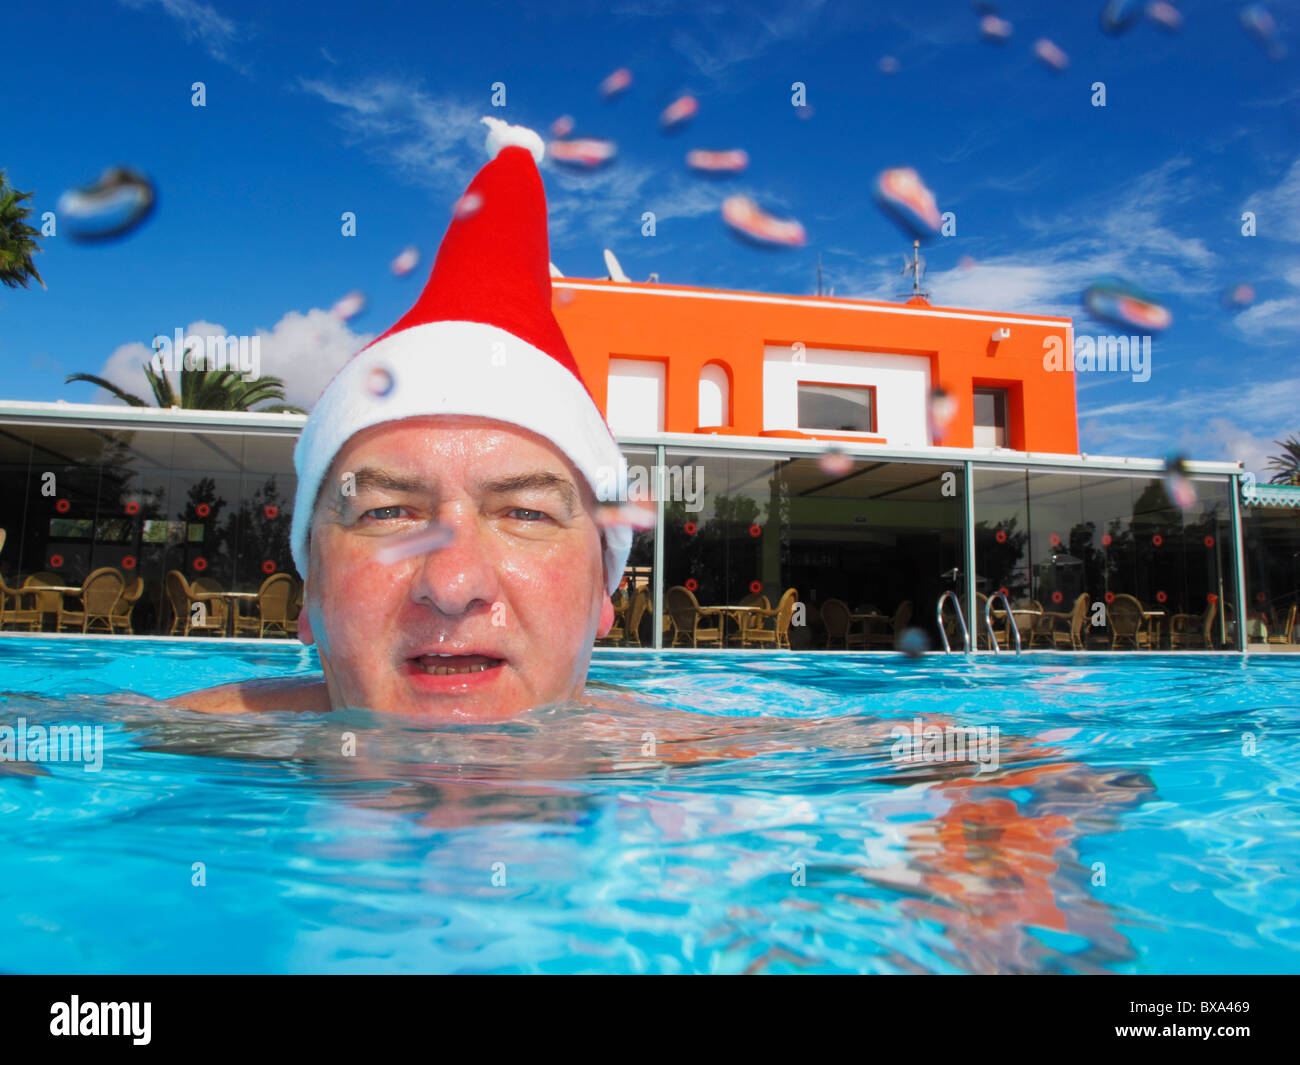 Nadador sonriente vistiendo un gorro de Papá Noel. Gotas de agua sobre el cristal de la cámara, dar esta toma un aspecto único. Foto de stock